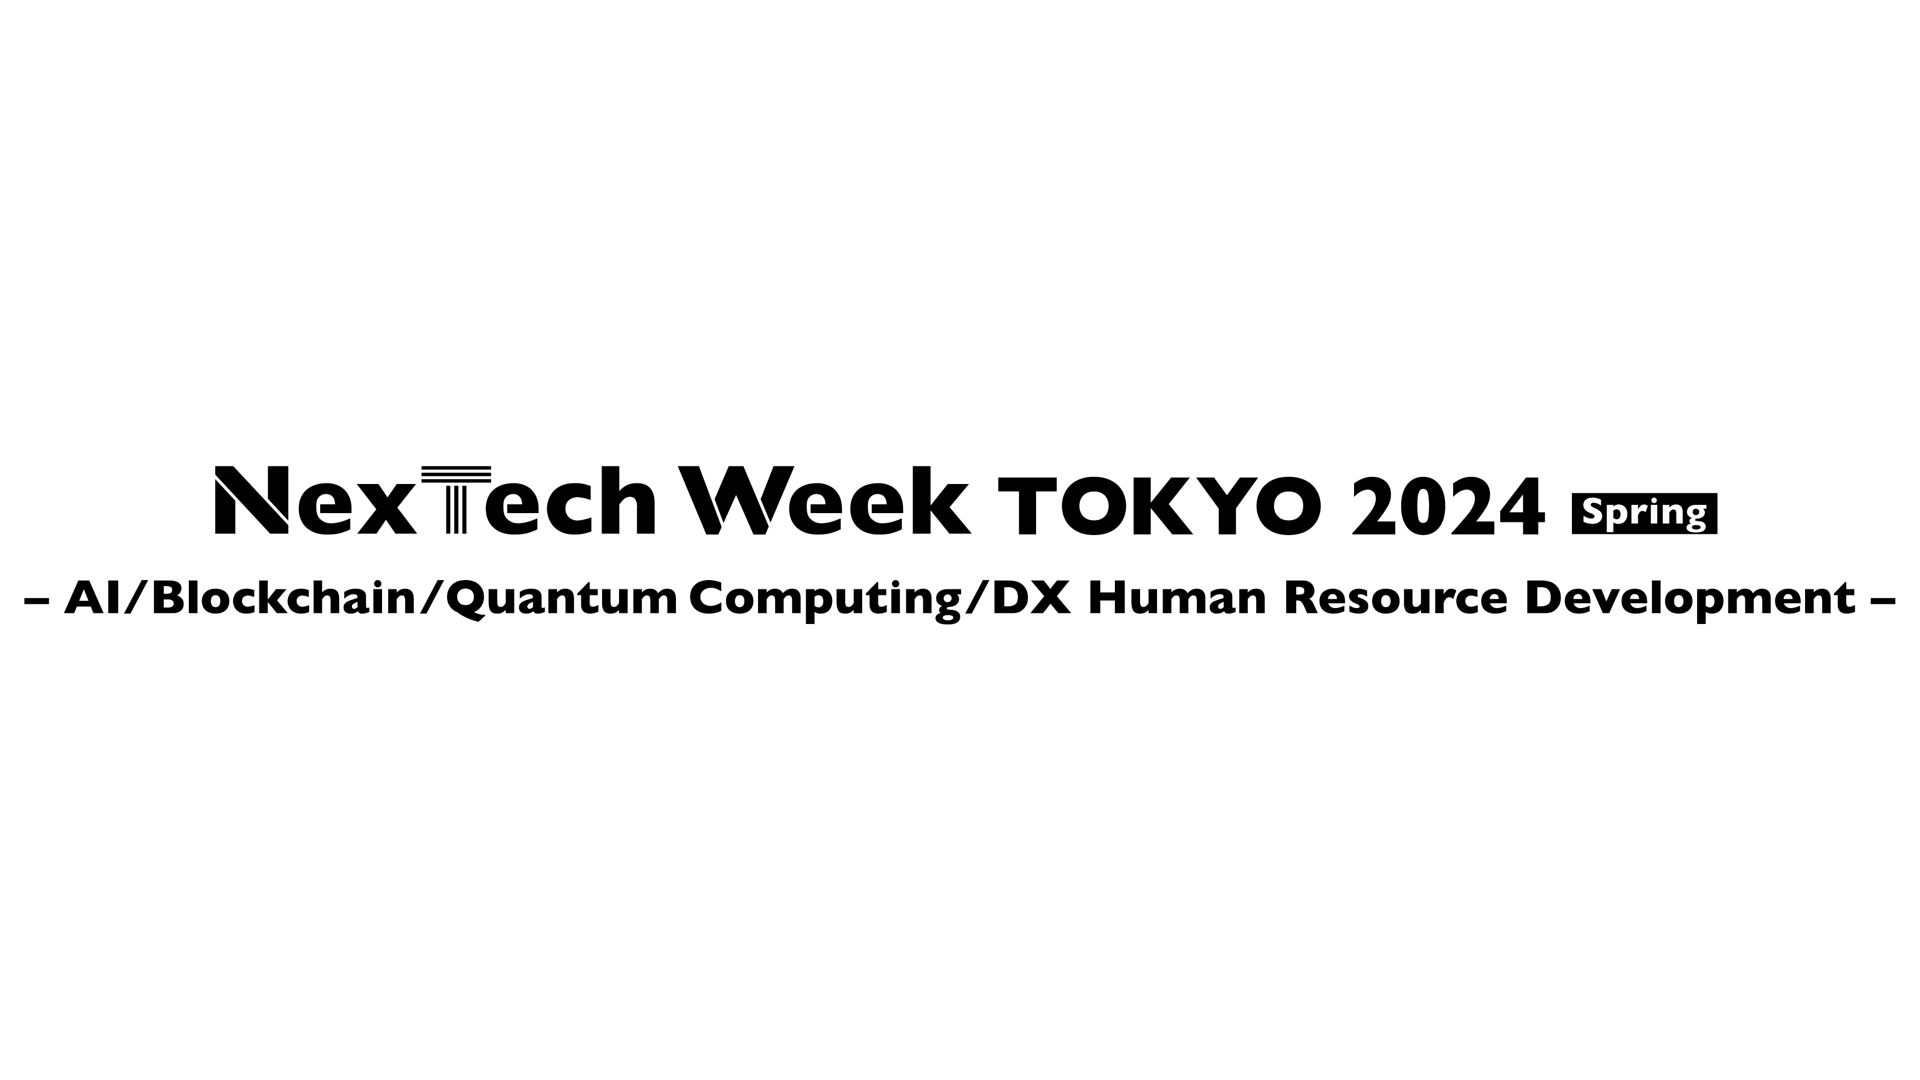 NexTech Week TOKYO 2024 [Spring], Tokyo, Kanto, Japan